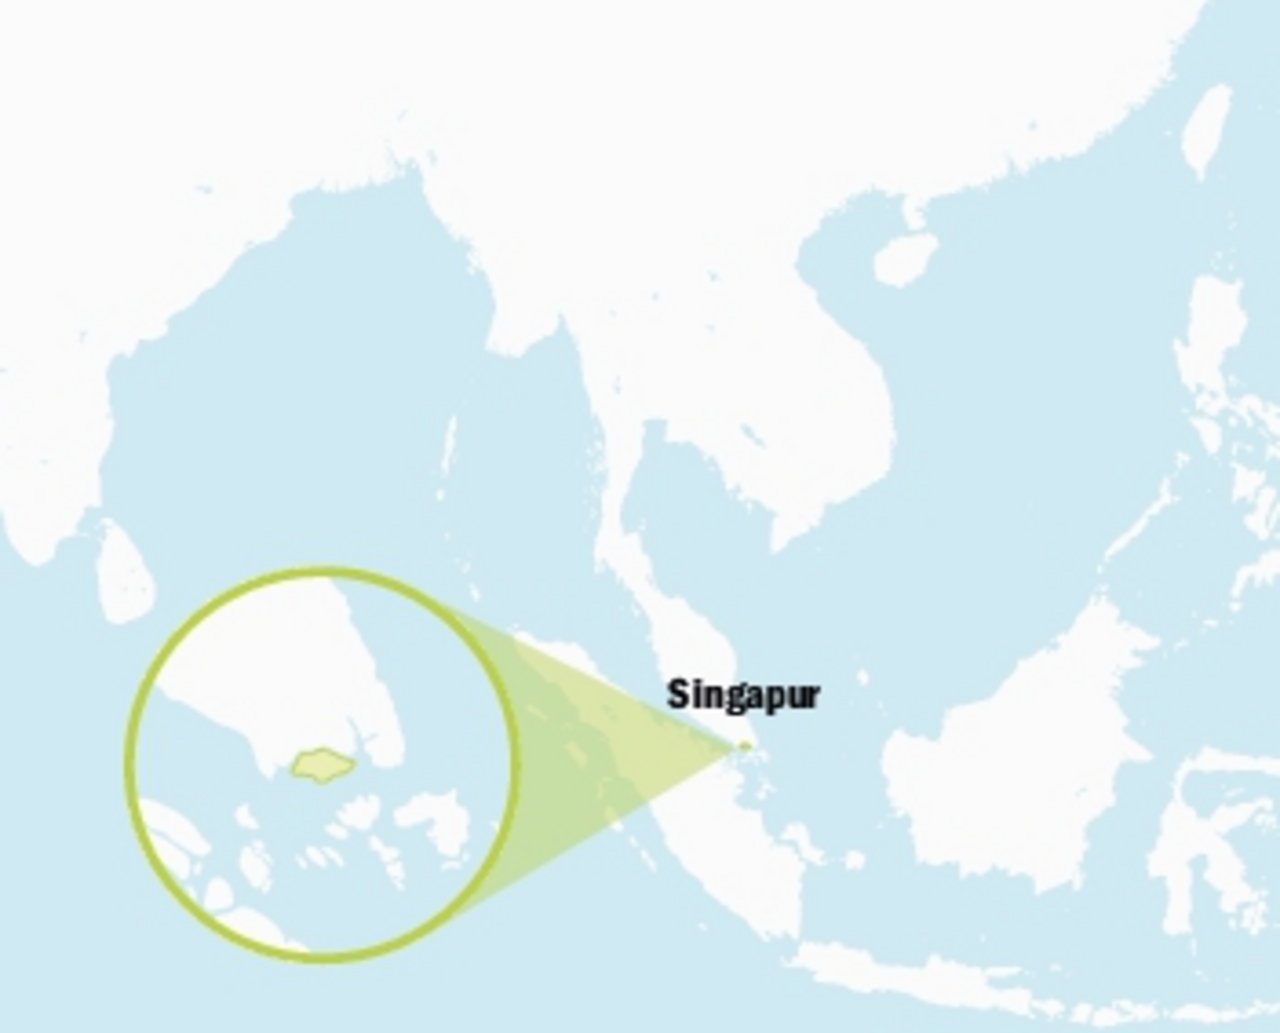 Singapur ist ein unabhängiger Inselstaat südlich von Malaysia in Südostasien. (Grafik BauZ)